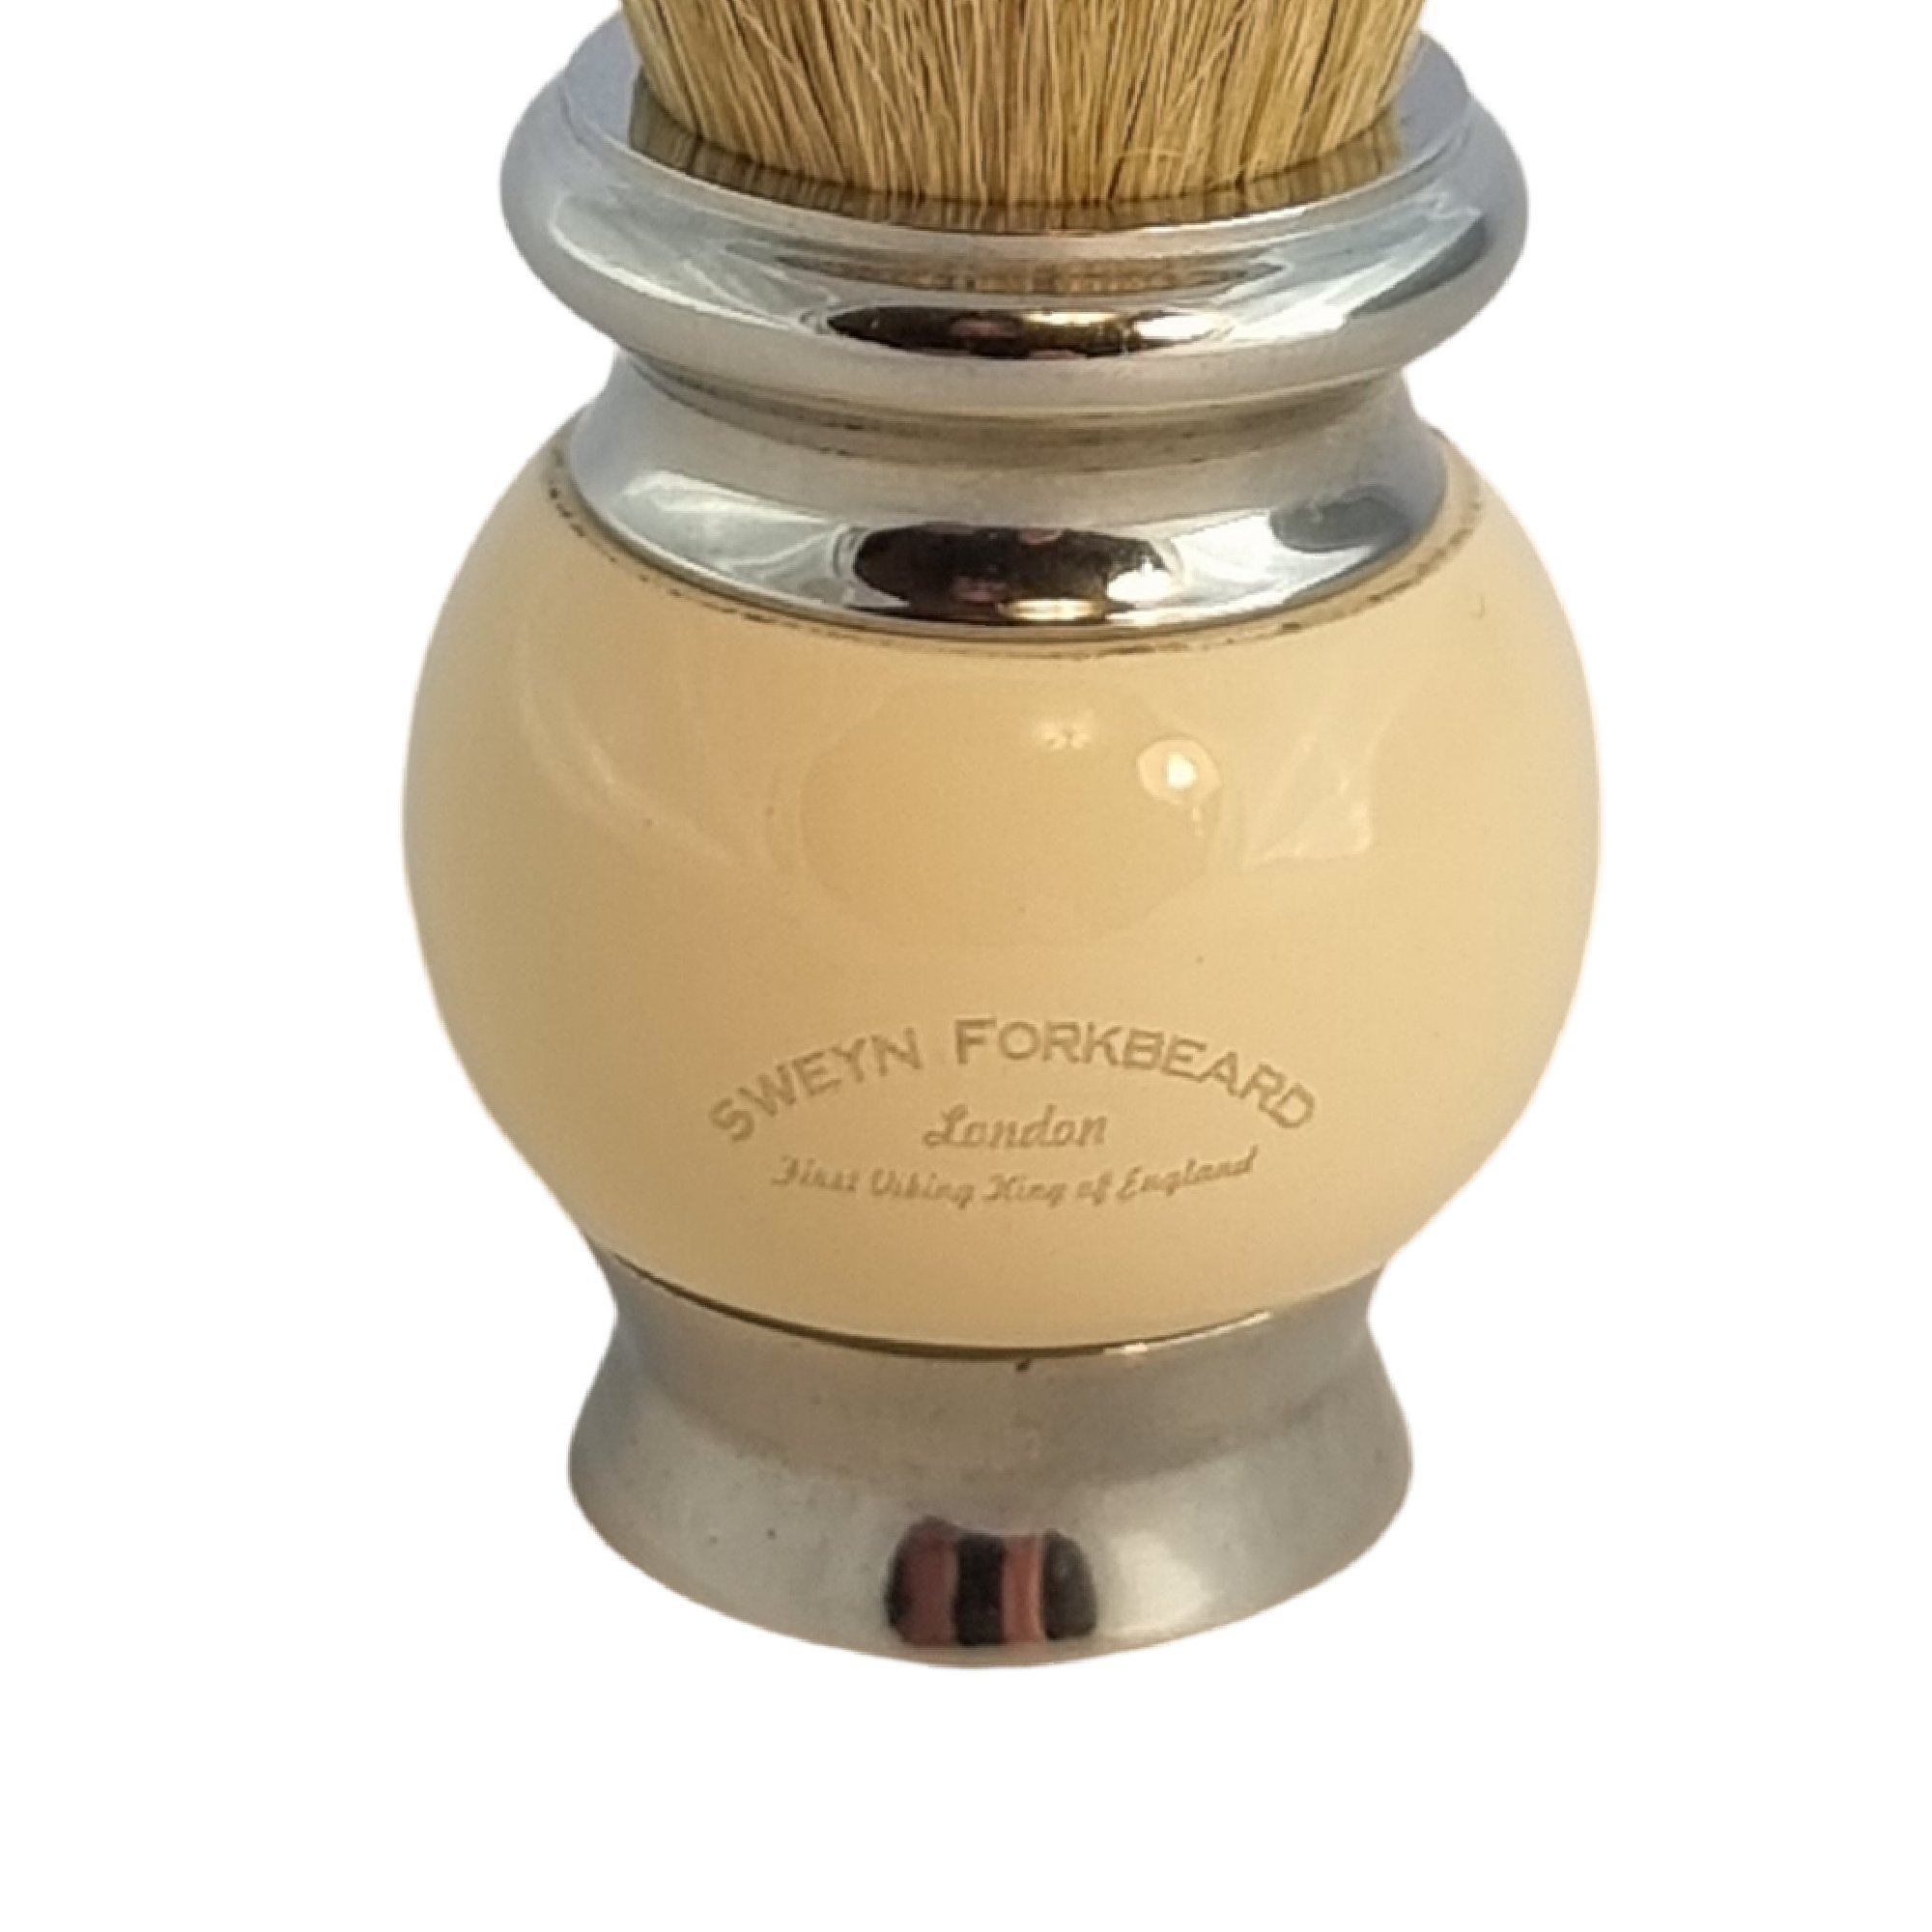 Sweyn Forkbeard — Shaving Brush Badger Ivory Cream